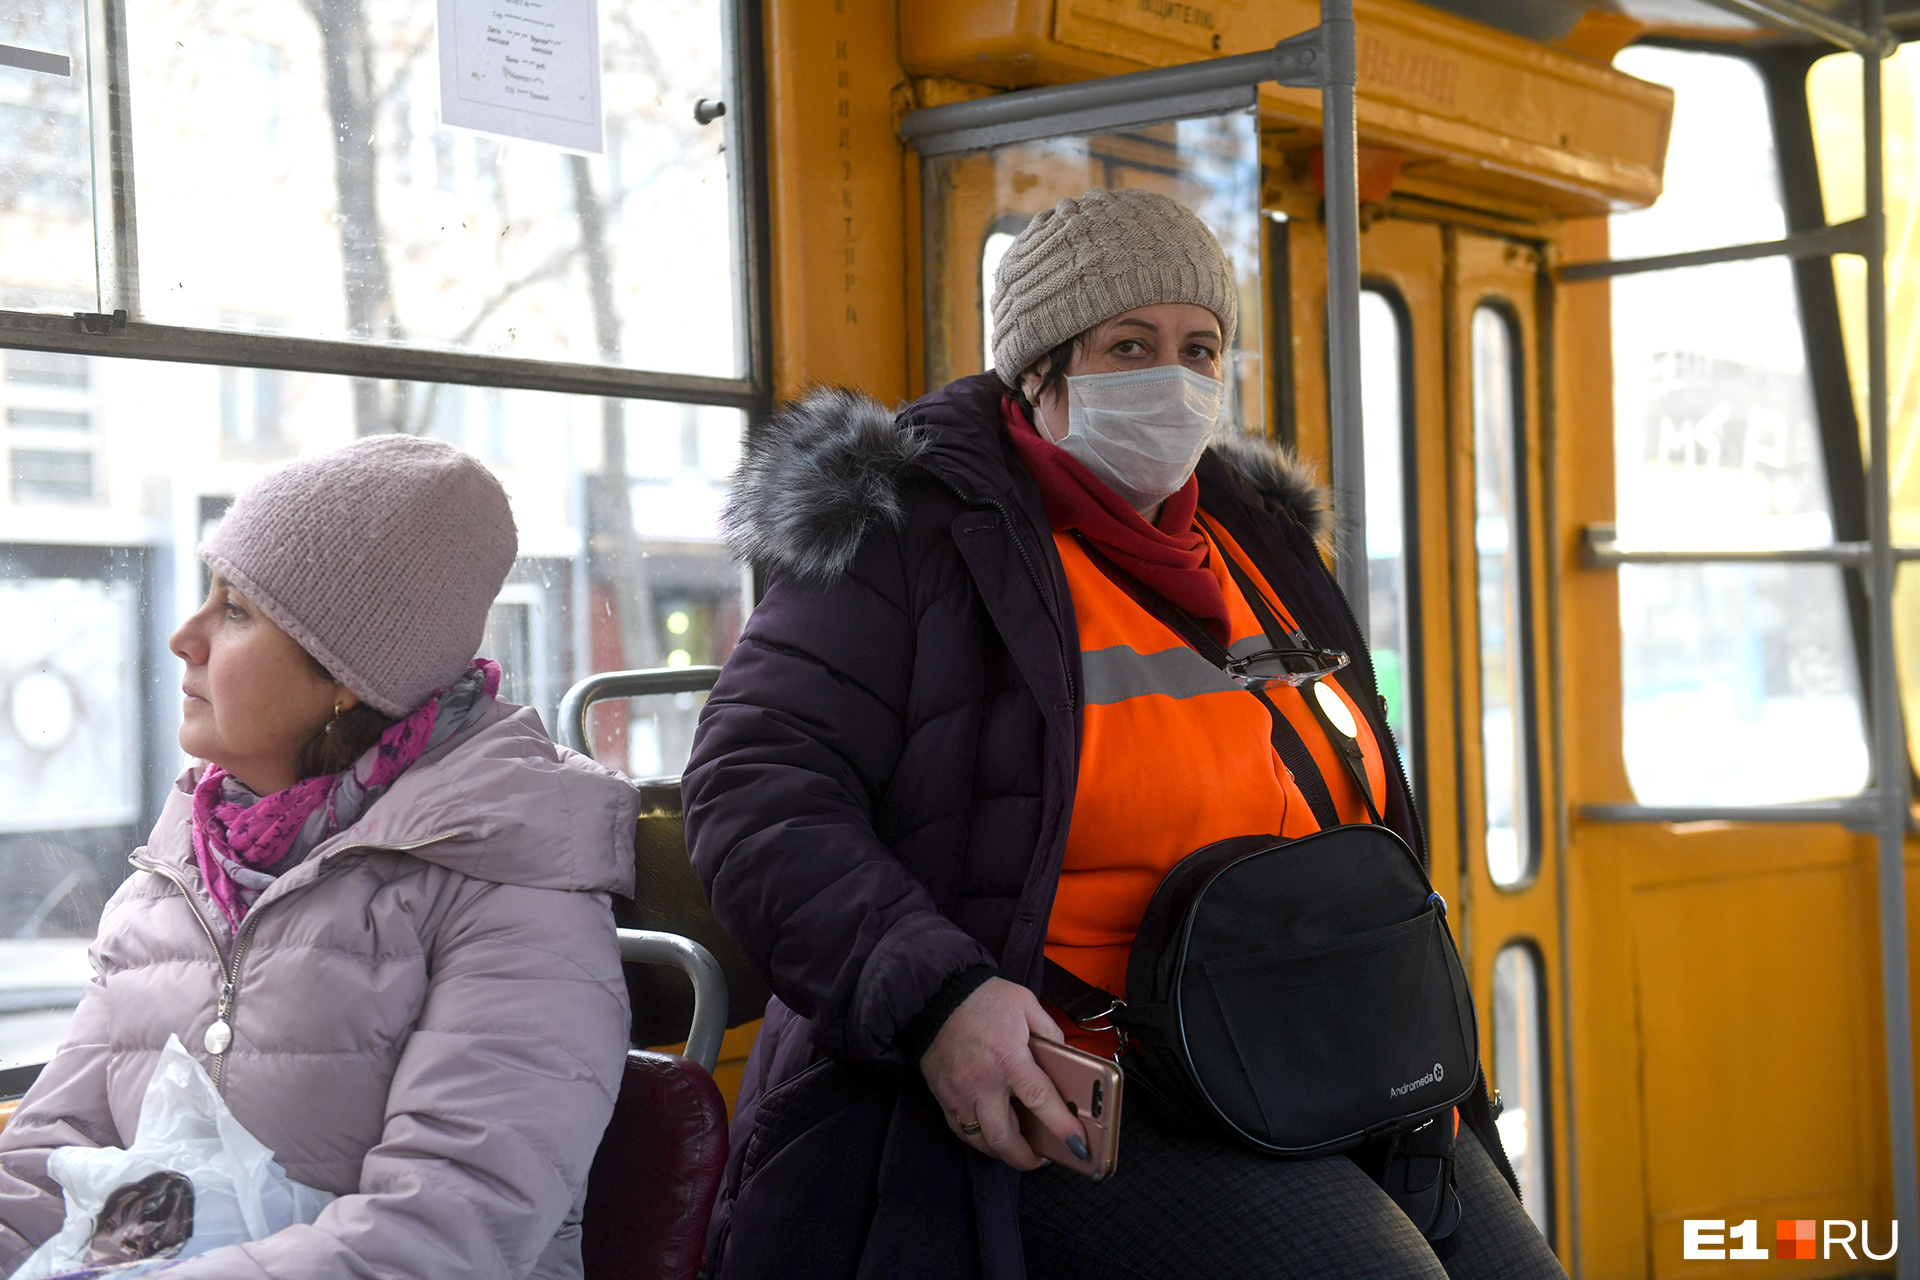 Сотрудники транспортных предприятий Екатеринбурга могут требовать от пассажиров оплаты, но не могут штрафовать их за безбилетный проезд